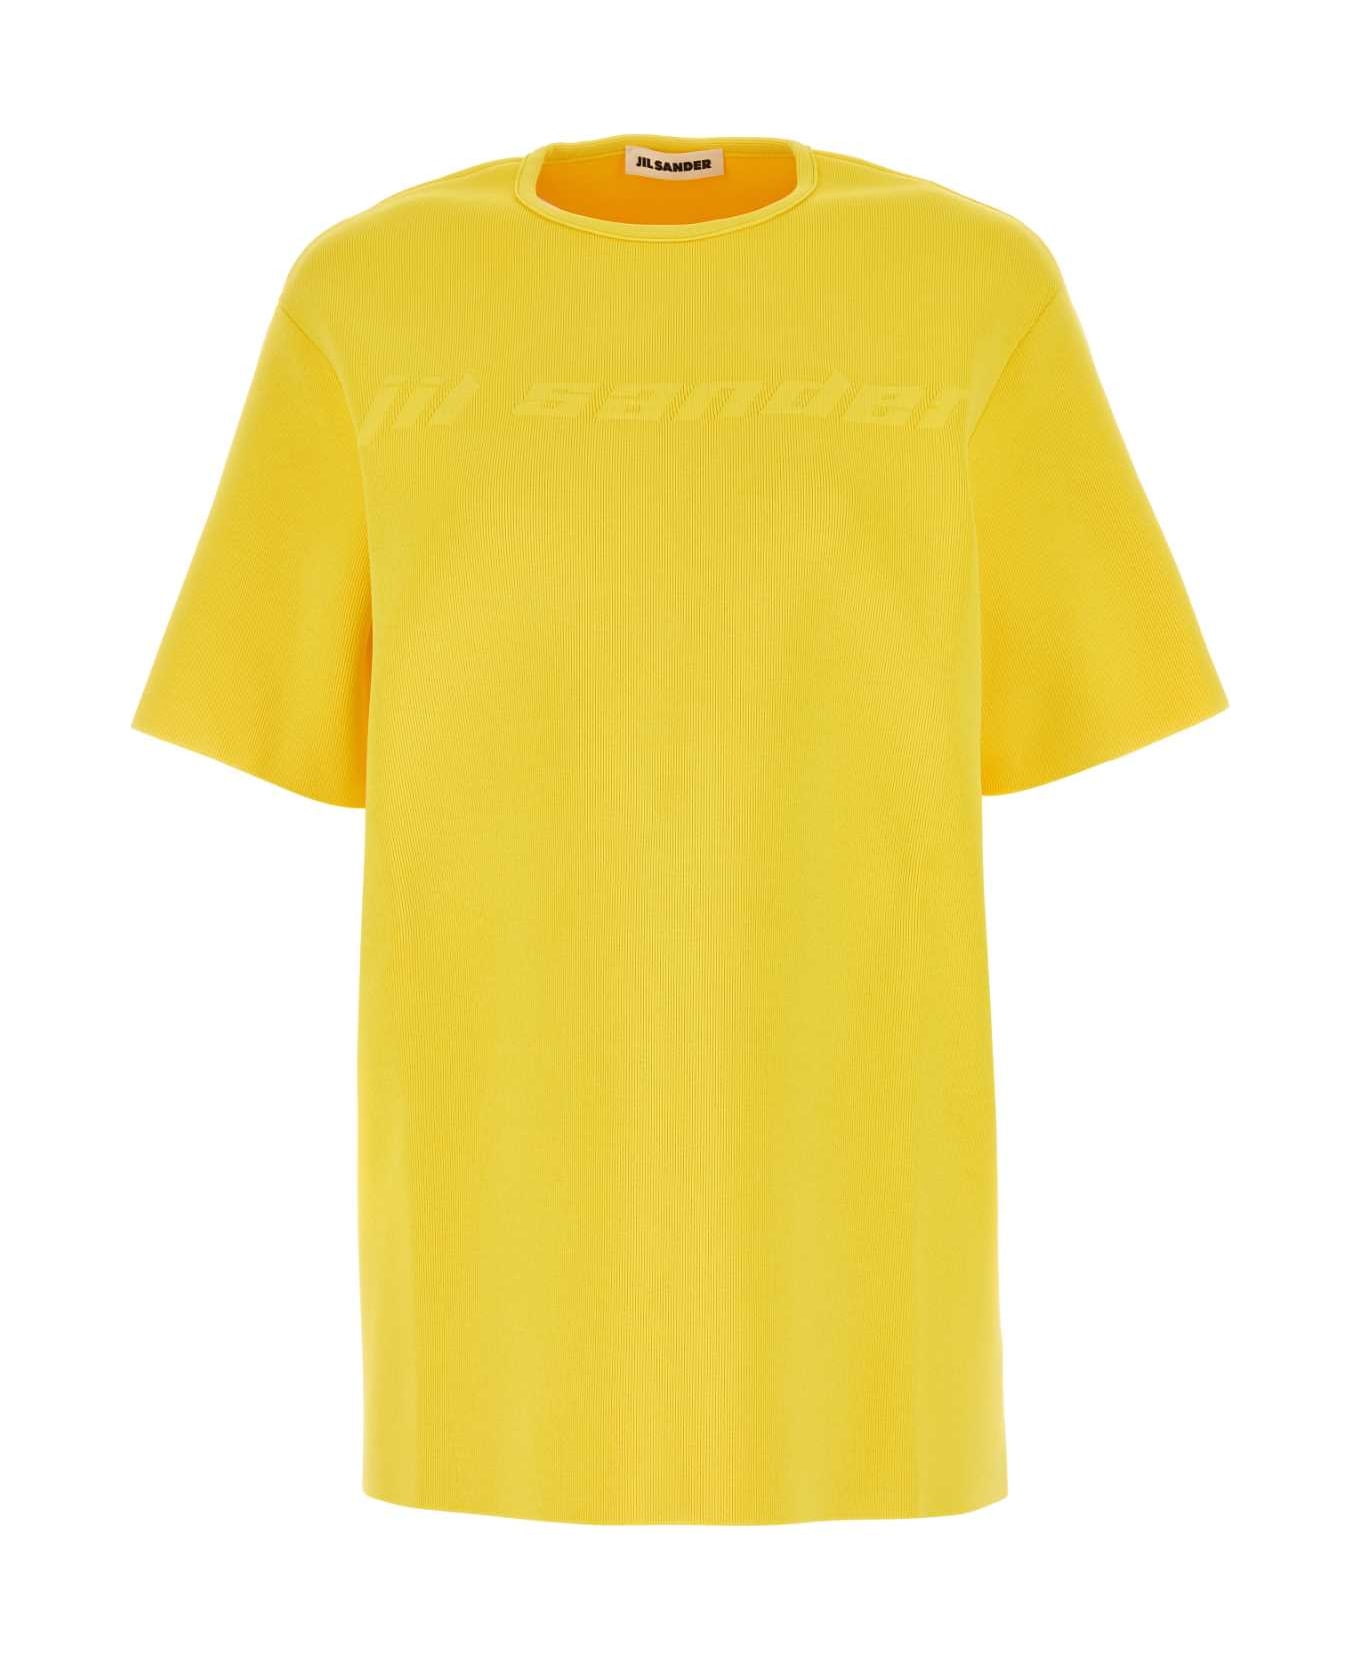 Jil Sander Yellow Viscose Blend T-shirt - 736 Tシャツ